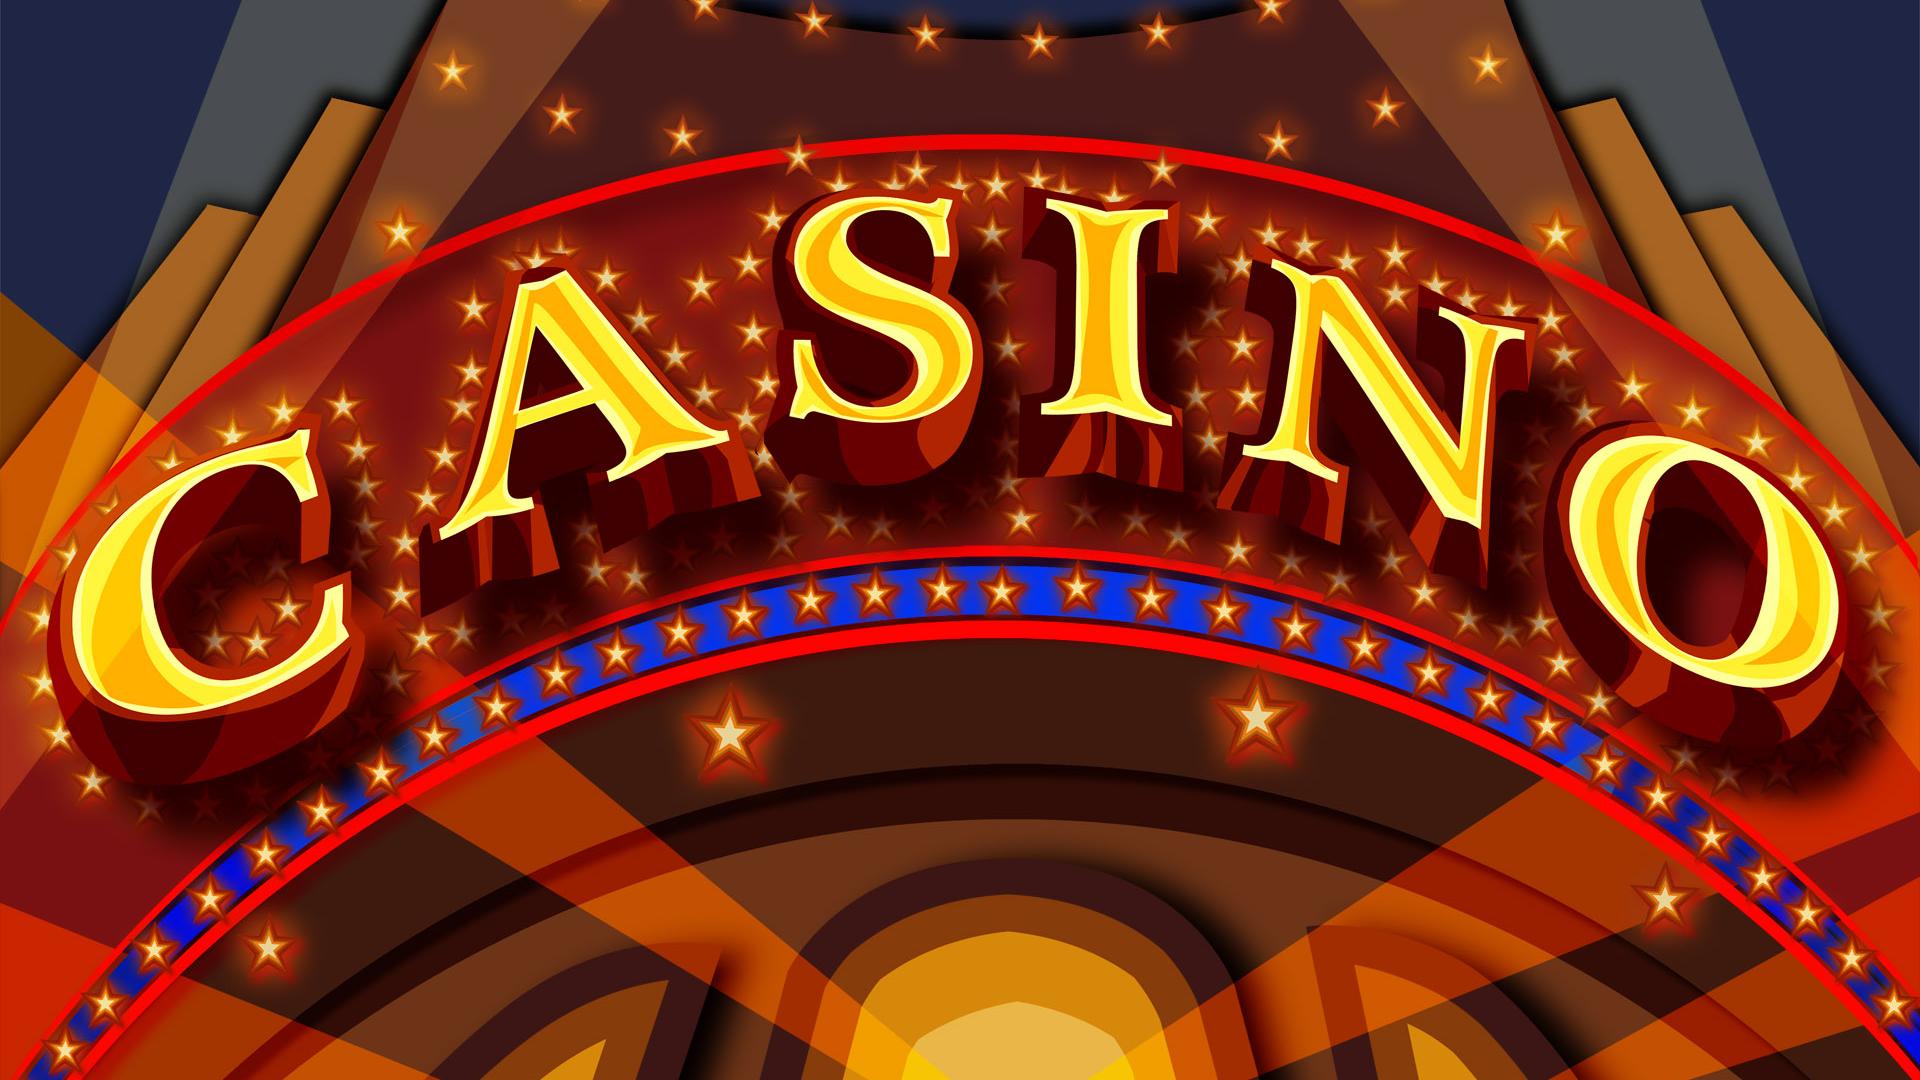 Bitcoin casino online bónus de boas-vindas sem depósito